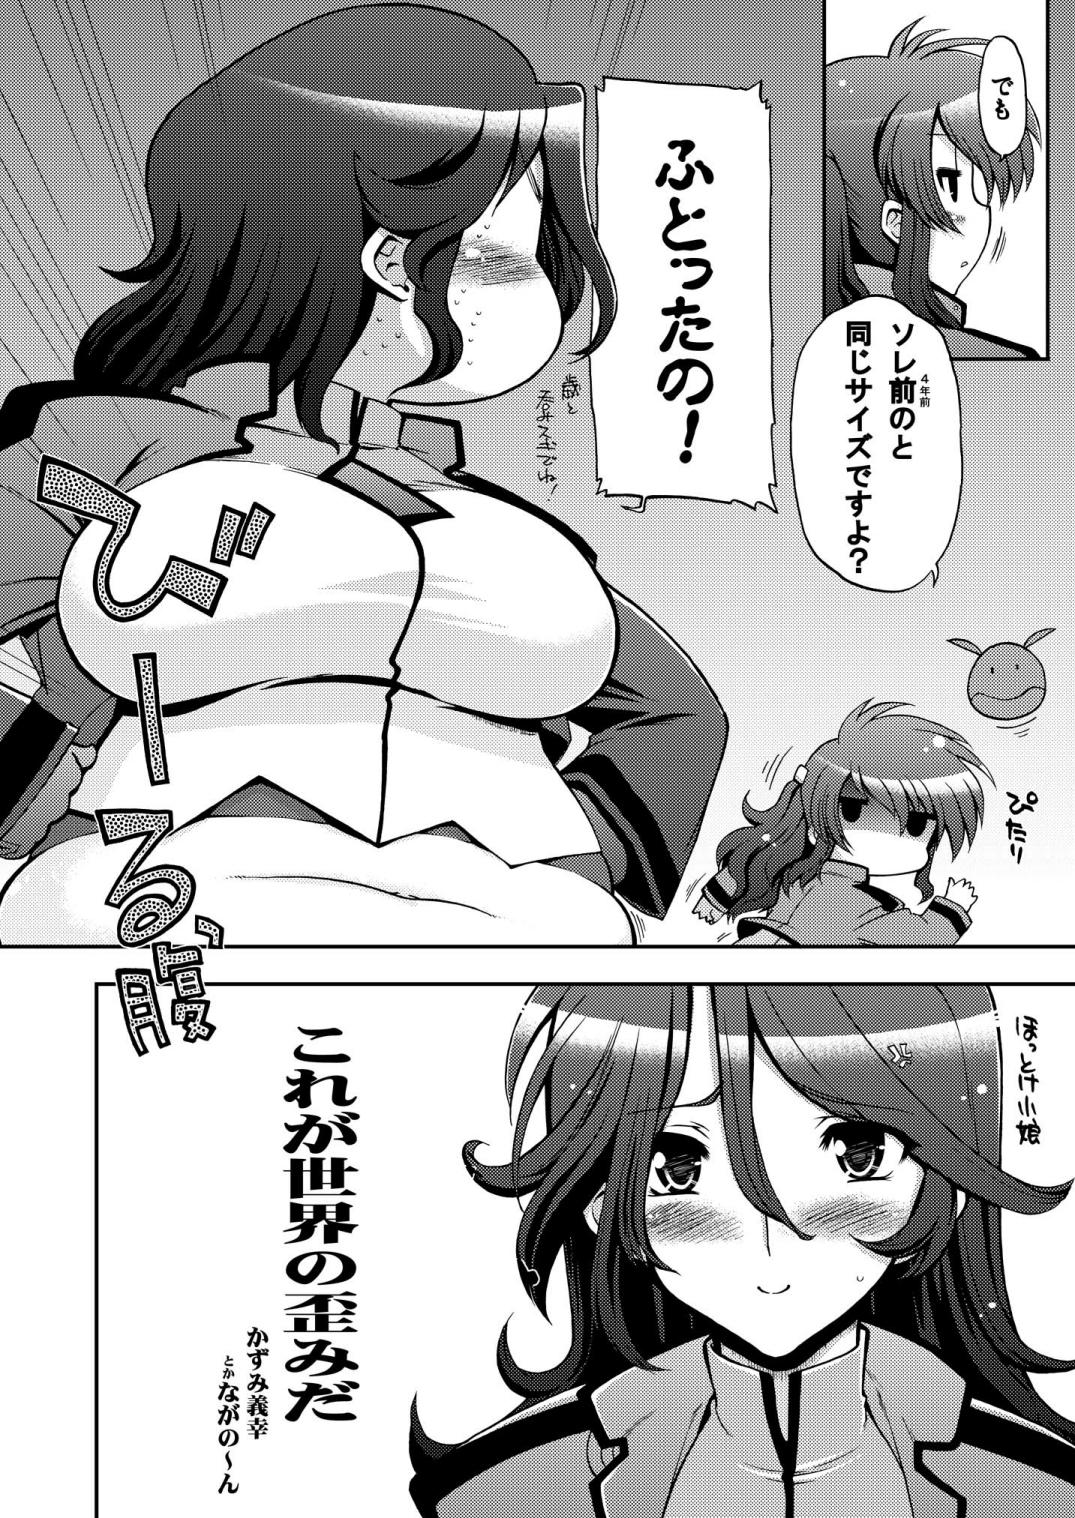 Street Korega Sekai no Hizumida - Gundam 00 Licking - Page 5